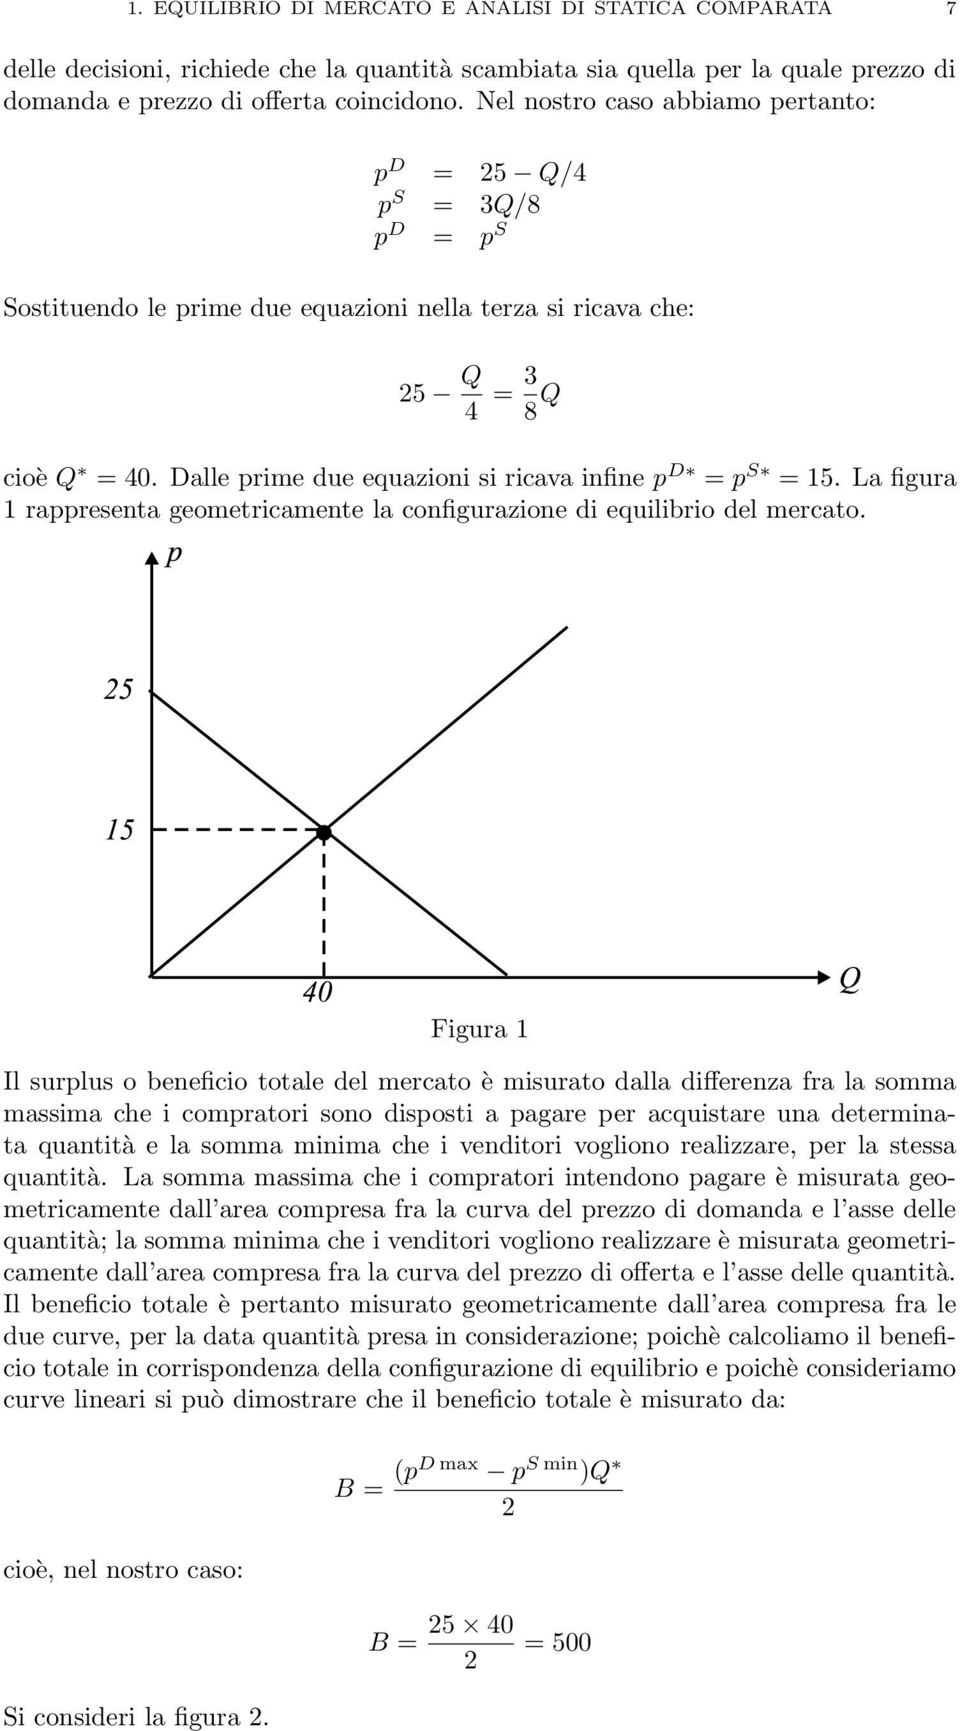 Dalle prime due equazioni si ricava infine p D = p S = 15. La figura 1 rappresenta geometricamente la configurazione di equilibrio del mercato.